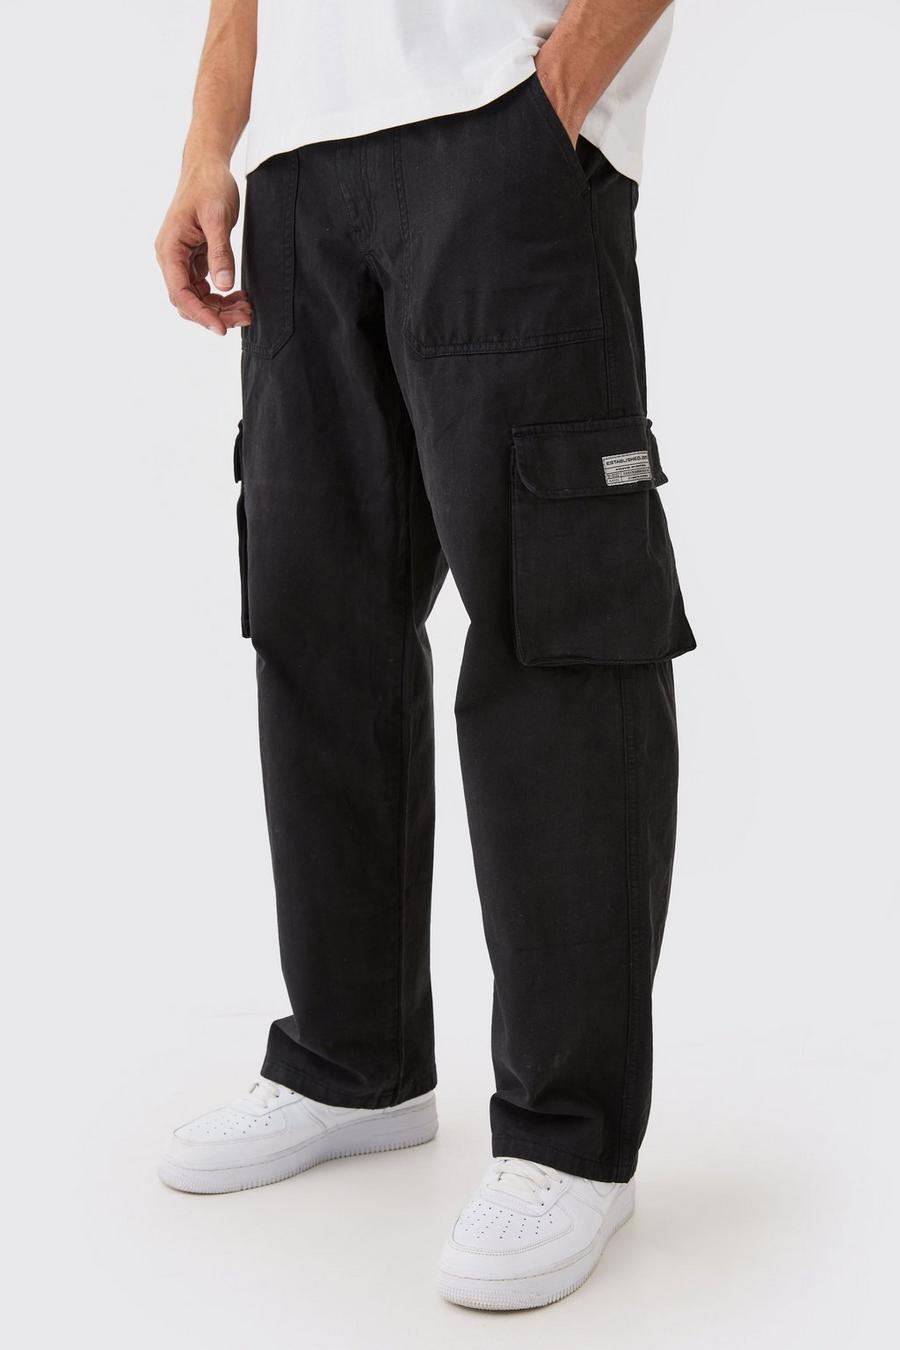 Pantalón cargo con cintura fija, cremallera y etiqueta de tela, Black